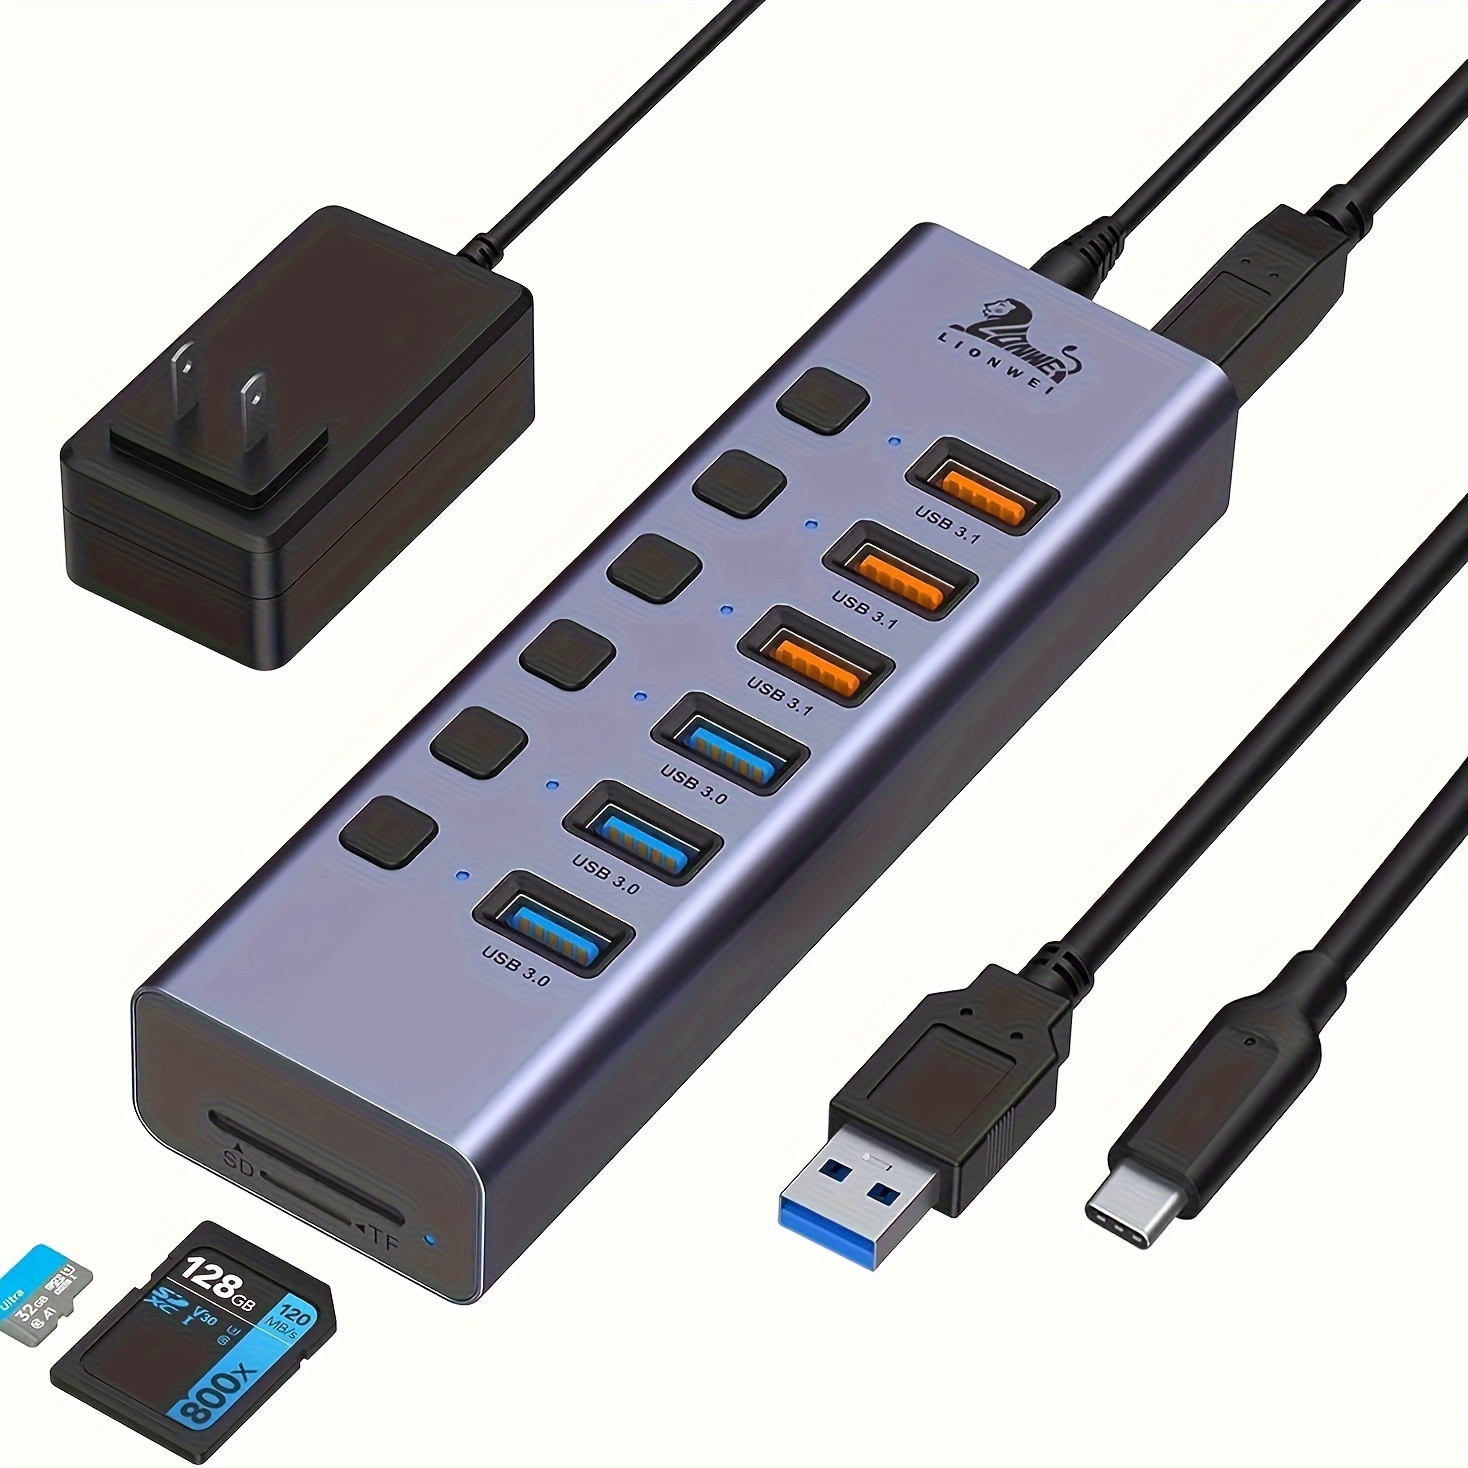 5 en 1 Micro SD + SD + USB 3.0 + USB 2.0 + Port micro USB vers USB-C /  Type-C Lecteur de carte adaptateur OTG COMBO pour tablette, smartphone, PC  (Gold)